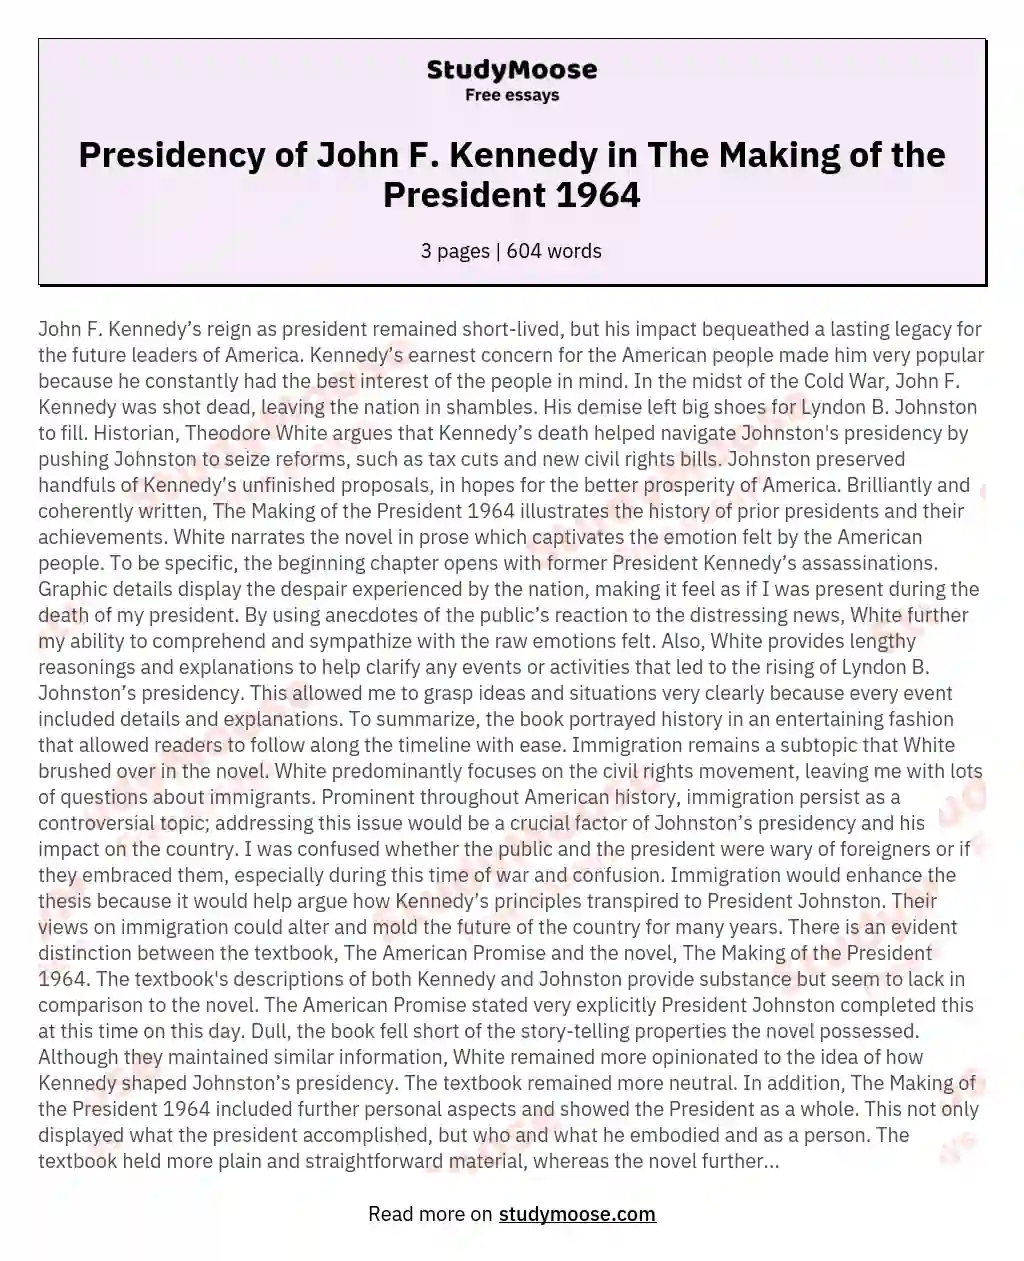 was john f kennedy a good president essay